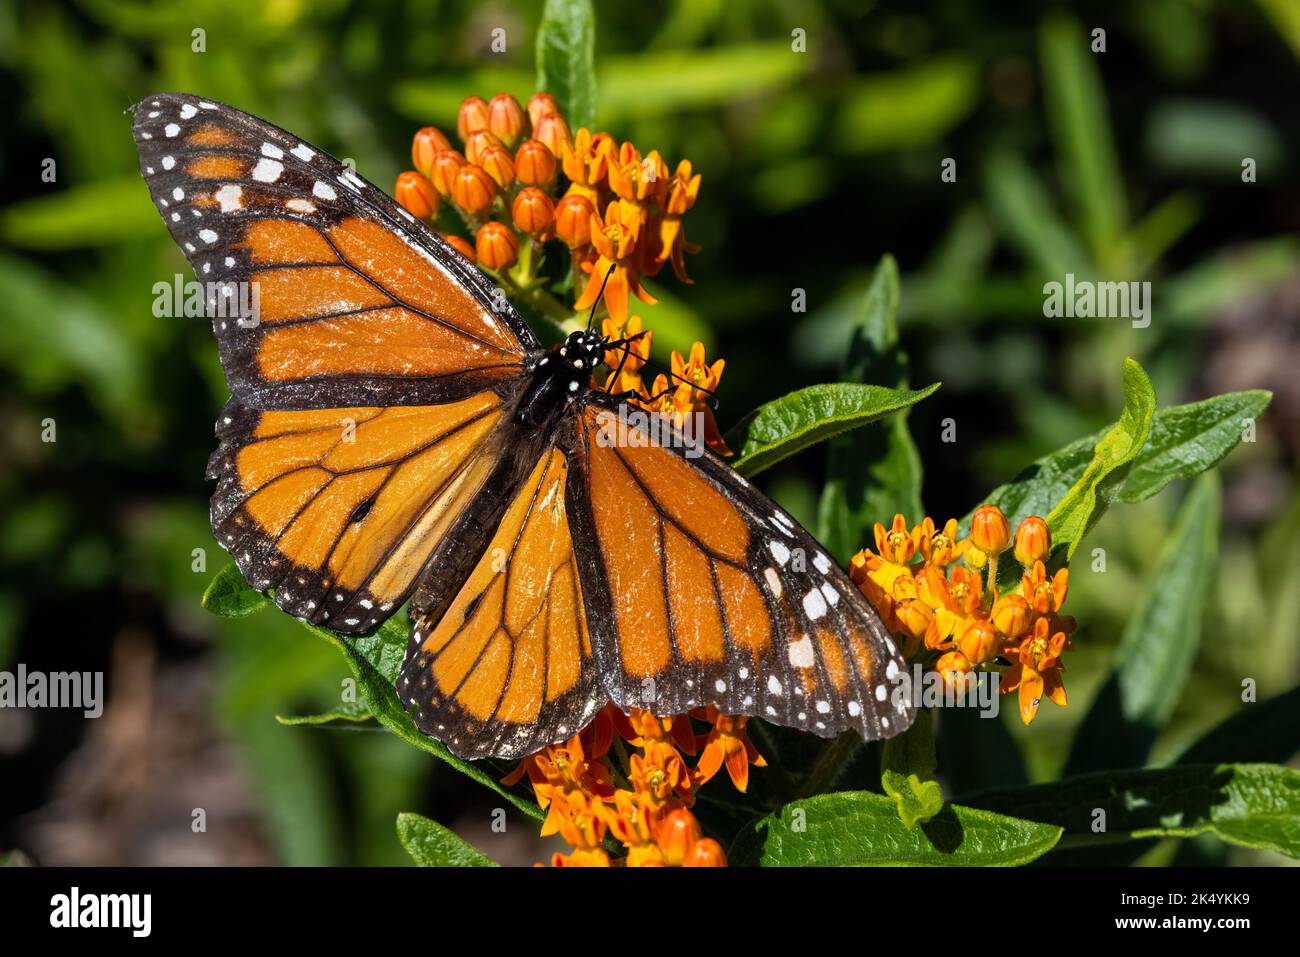 Relation symbiotique entre le papillon monarque (Danaus plexippus) et le buisson orangé (Buddleja davidii), Delaware Botanic Gardens, Delaware Banque D'Images